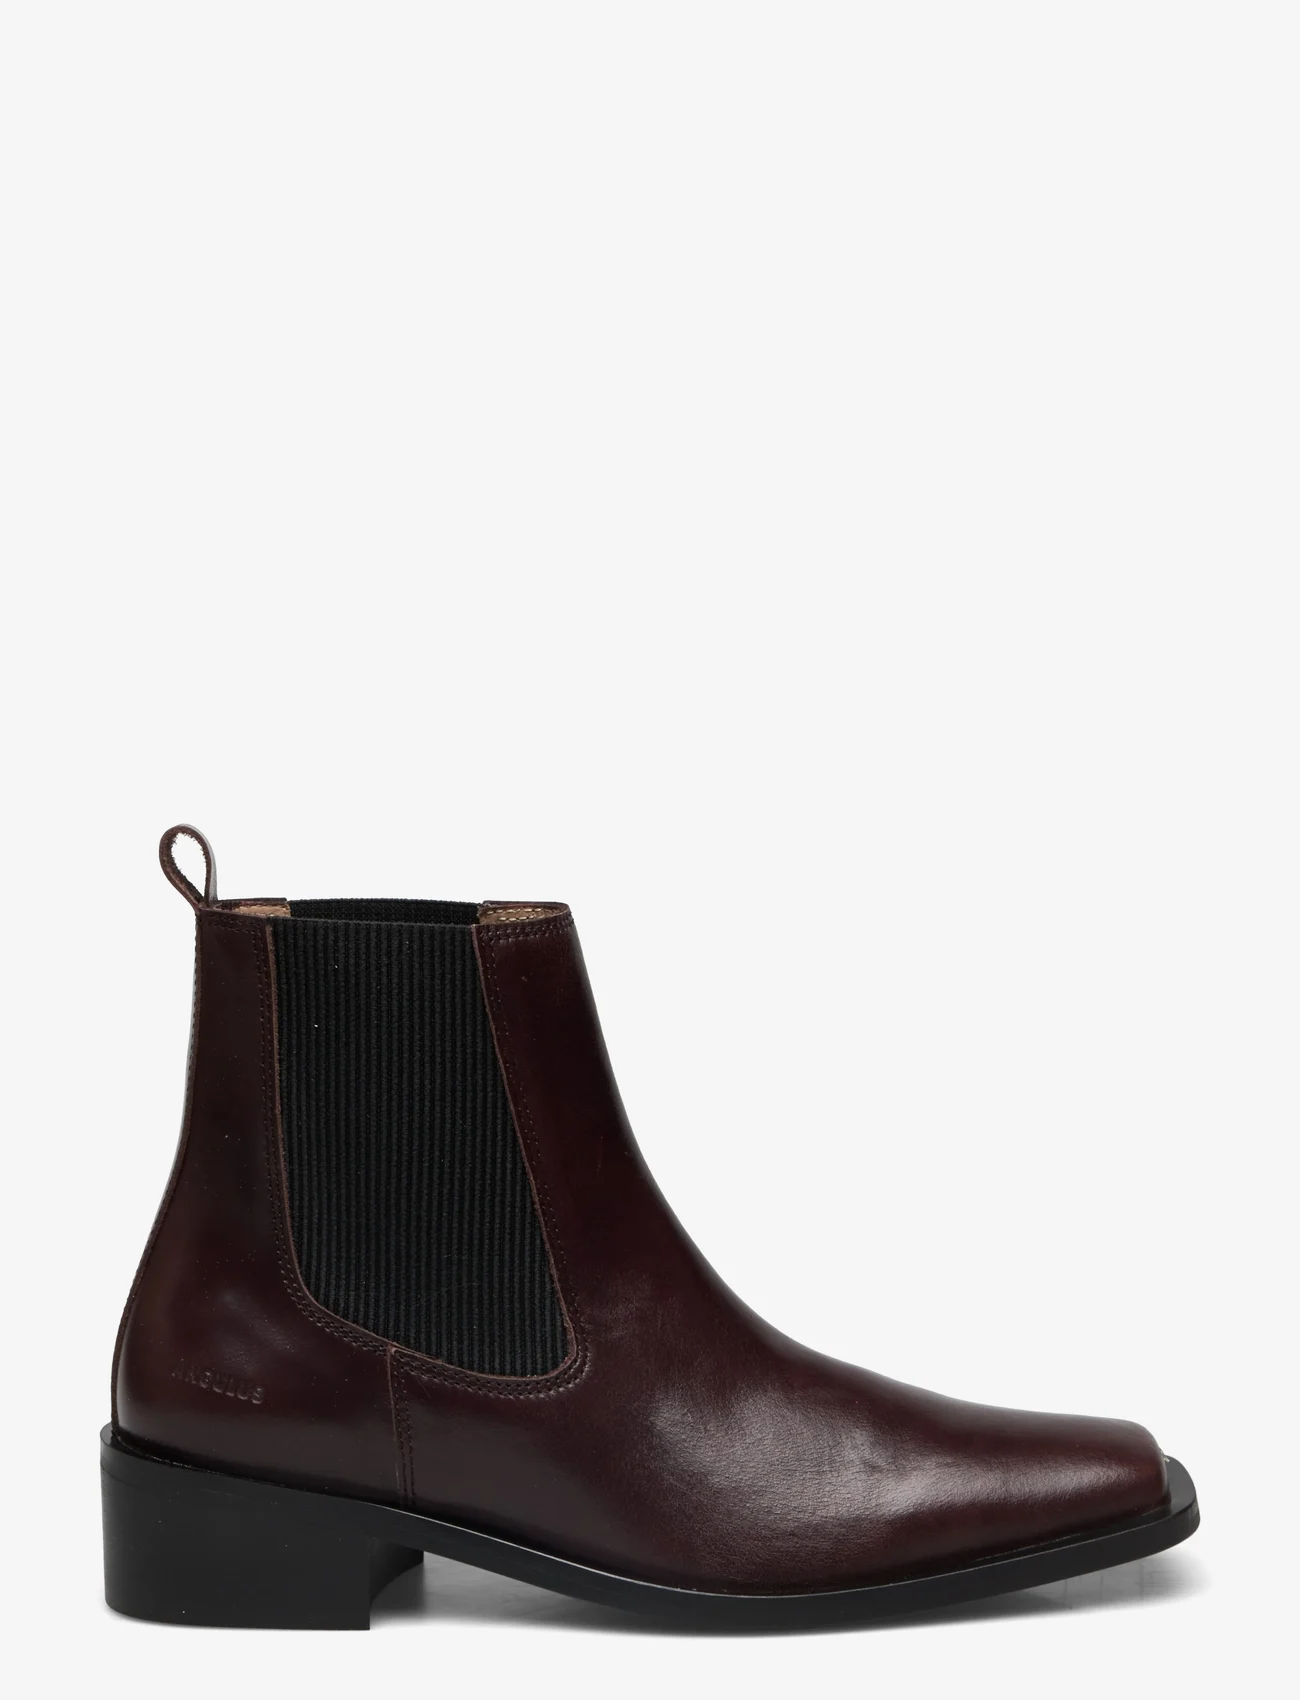 ANGULUS - Booties - Block heel - with elas - flat ankle boots - 1836/019 dark brown/black - 1